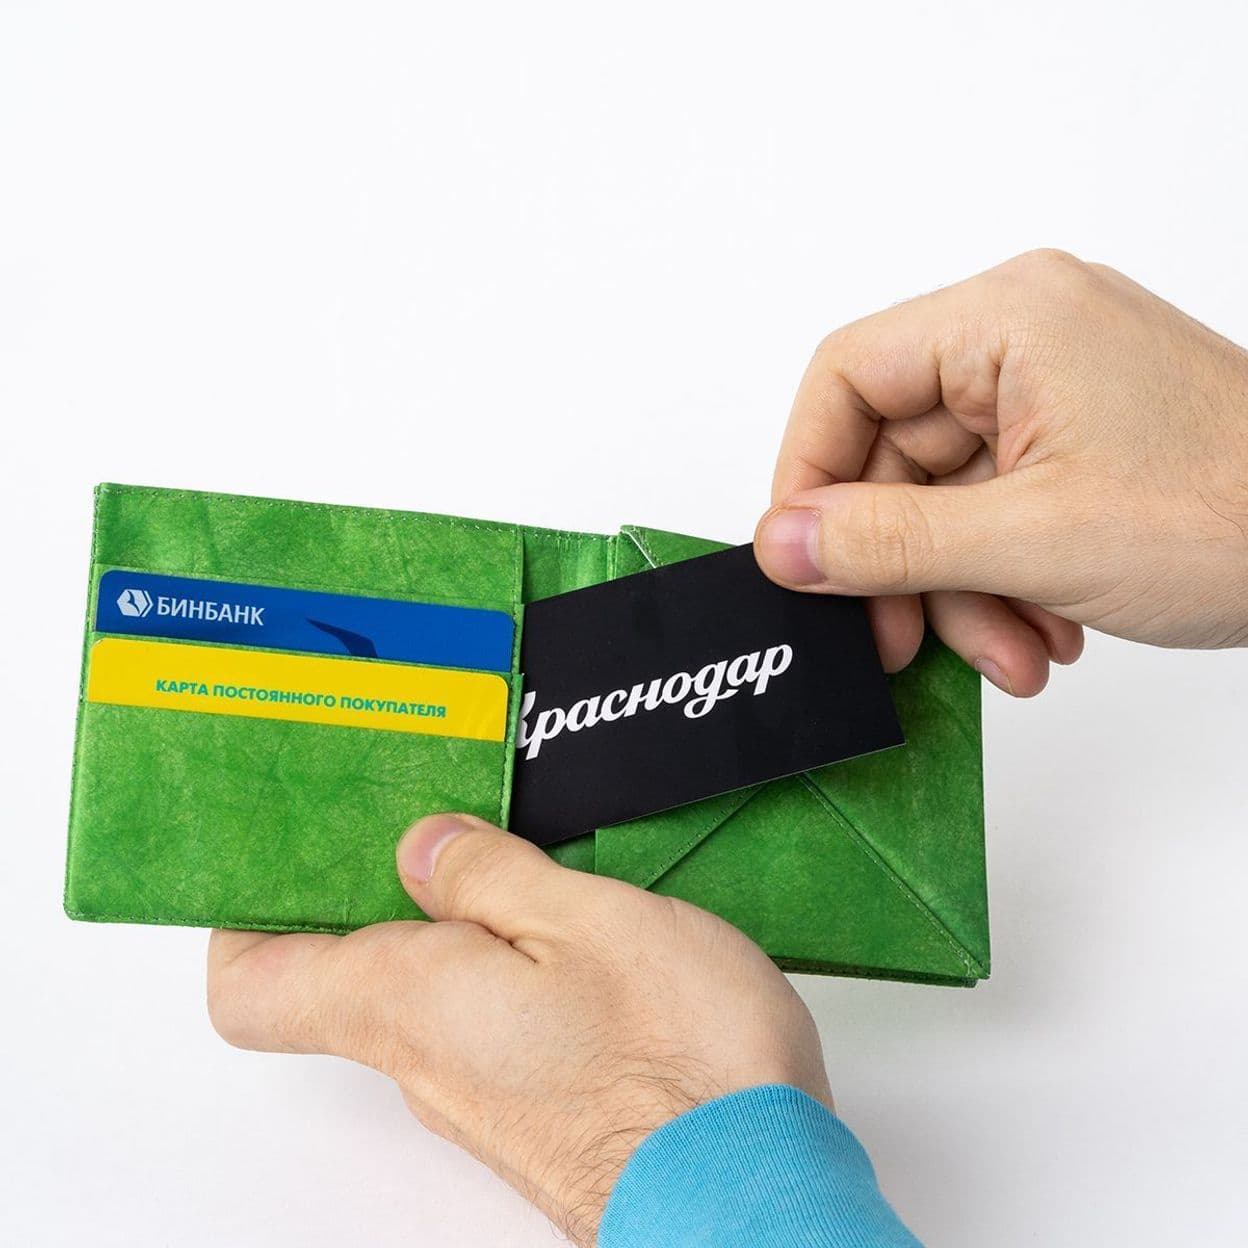 Купить Бумажник ALAP Короткий (зелёный)